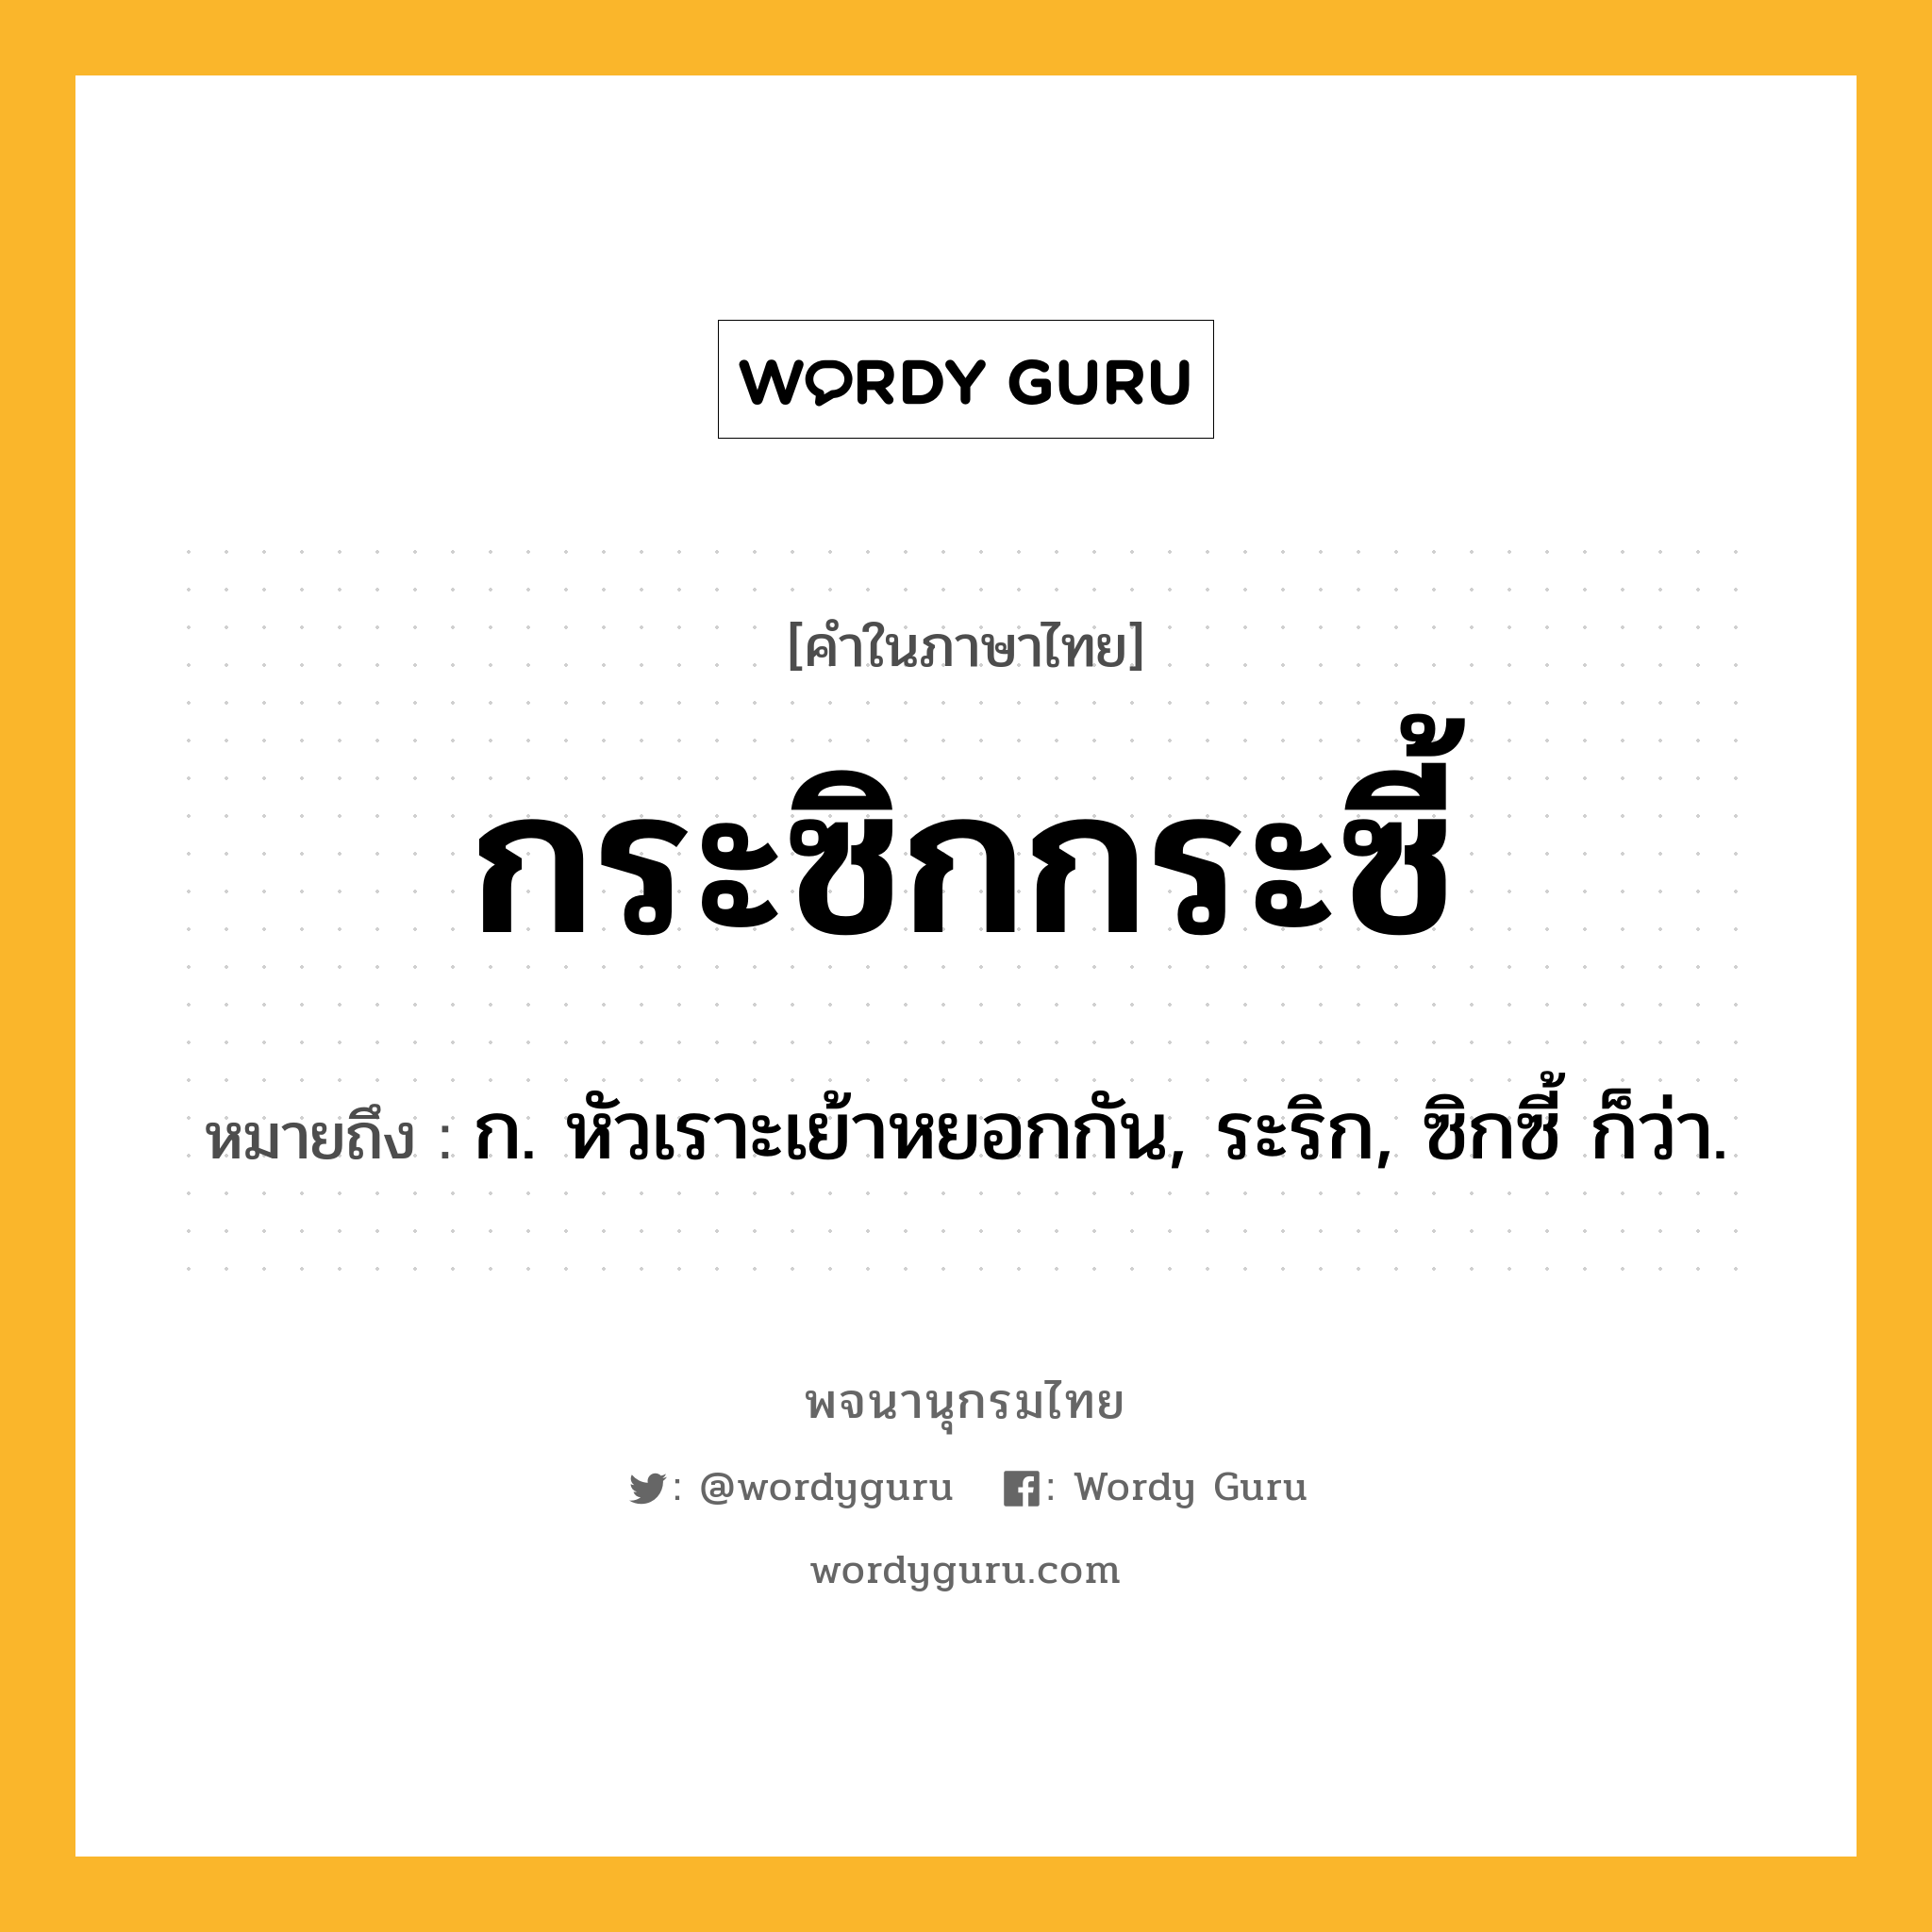 กระซิกกระซี้ ความหมาย หมายถึงอะไร?, คำในภาษาไทย กระซิกกระซี้ หมายถึง ก. หัวเราะเย้าหยอกกัน, ระริก, ซิกซี้ ก็ว่า.